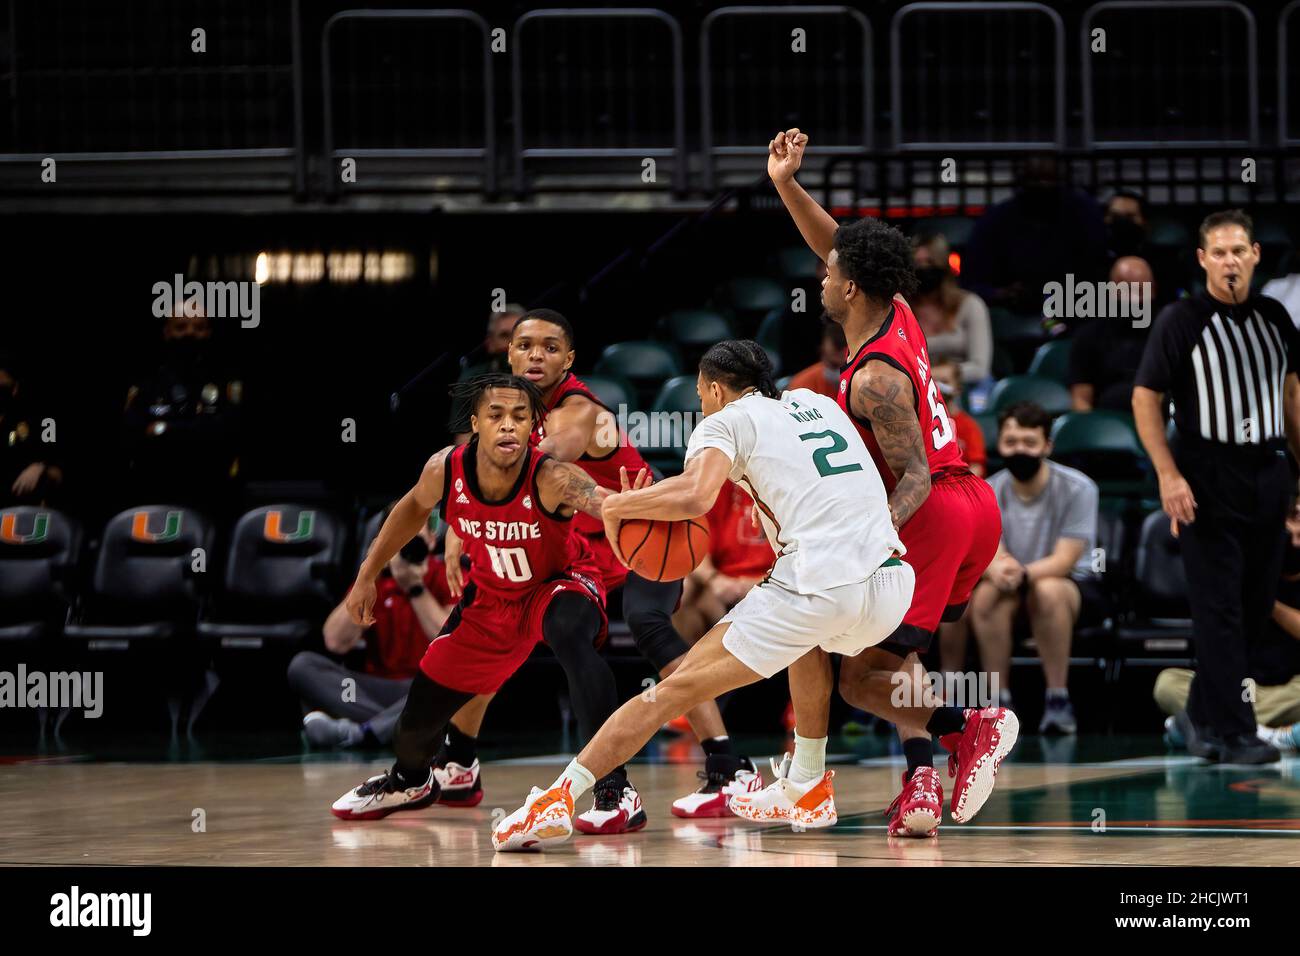 A look at Isaiah Wong, Miami Hurricanes men's basketball guard